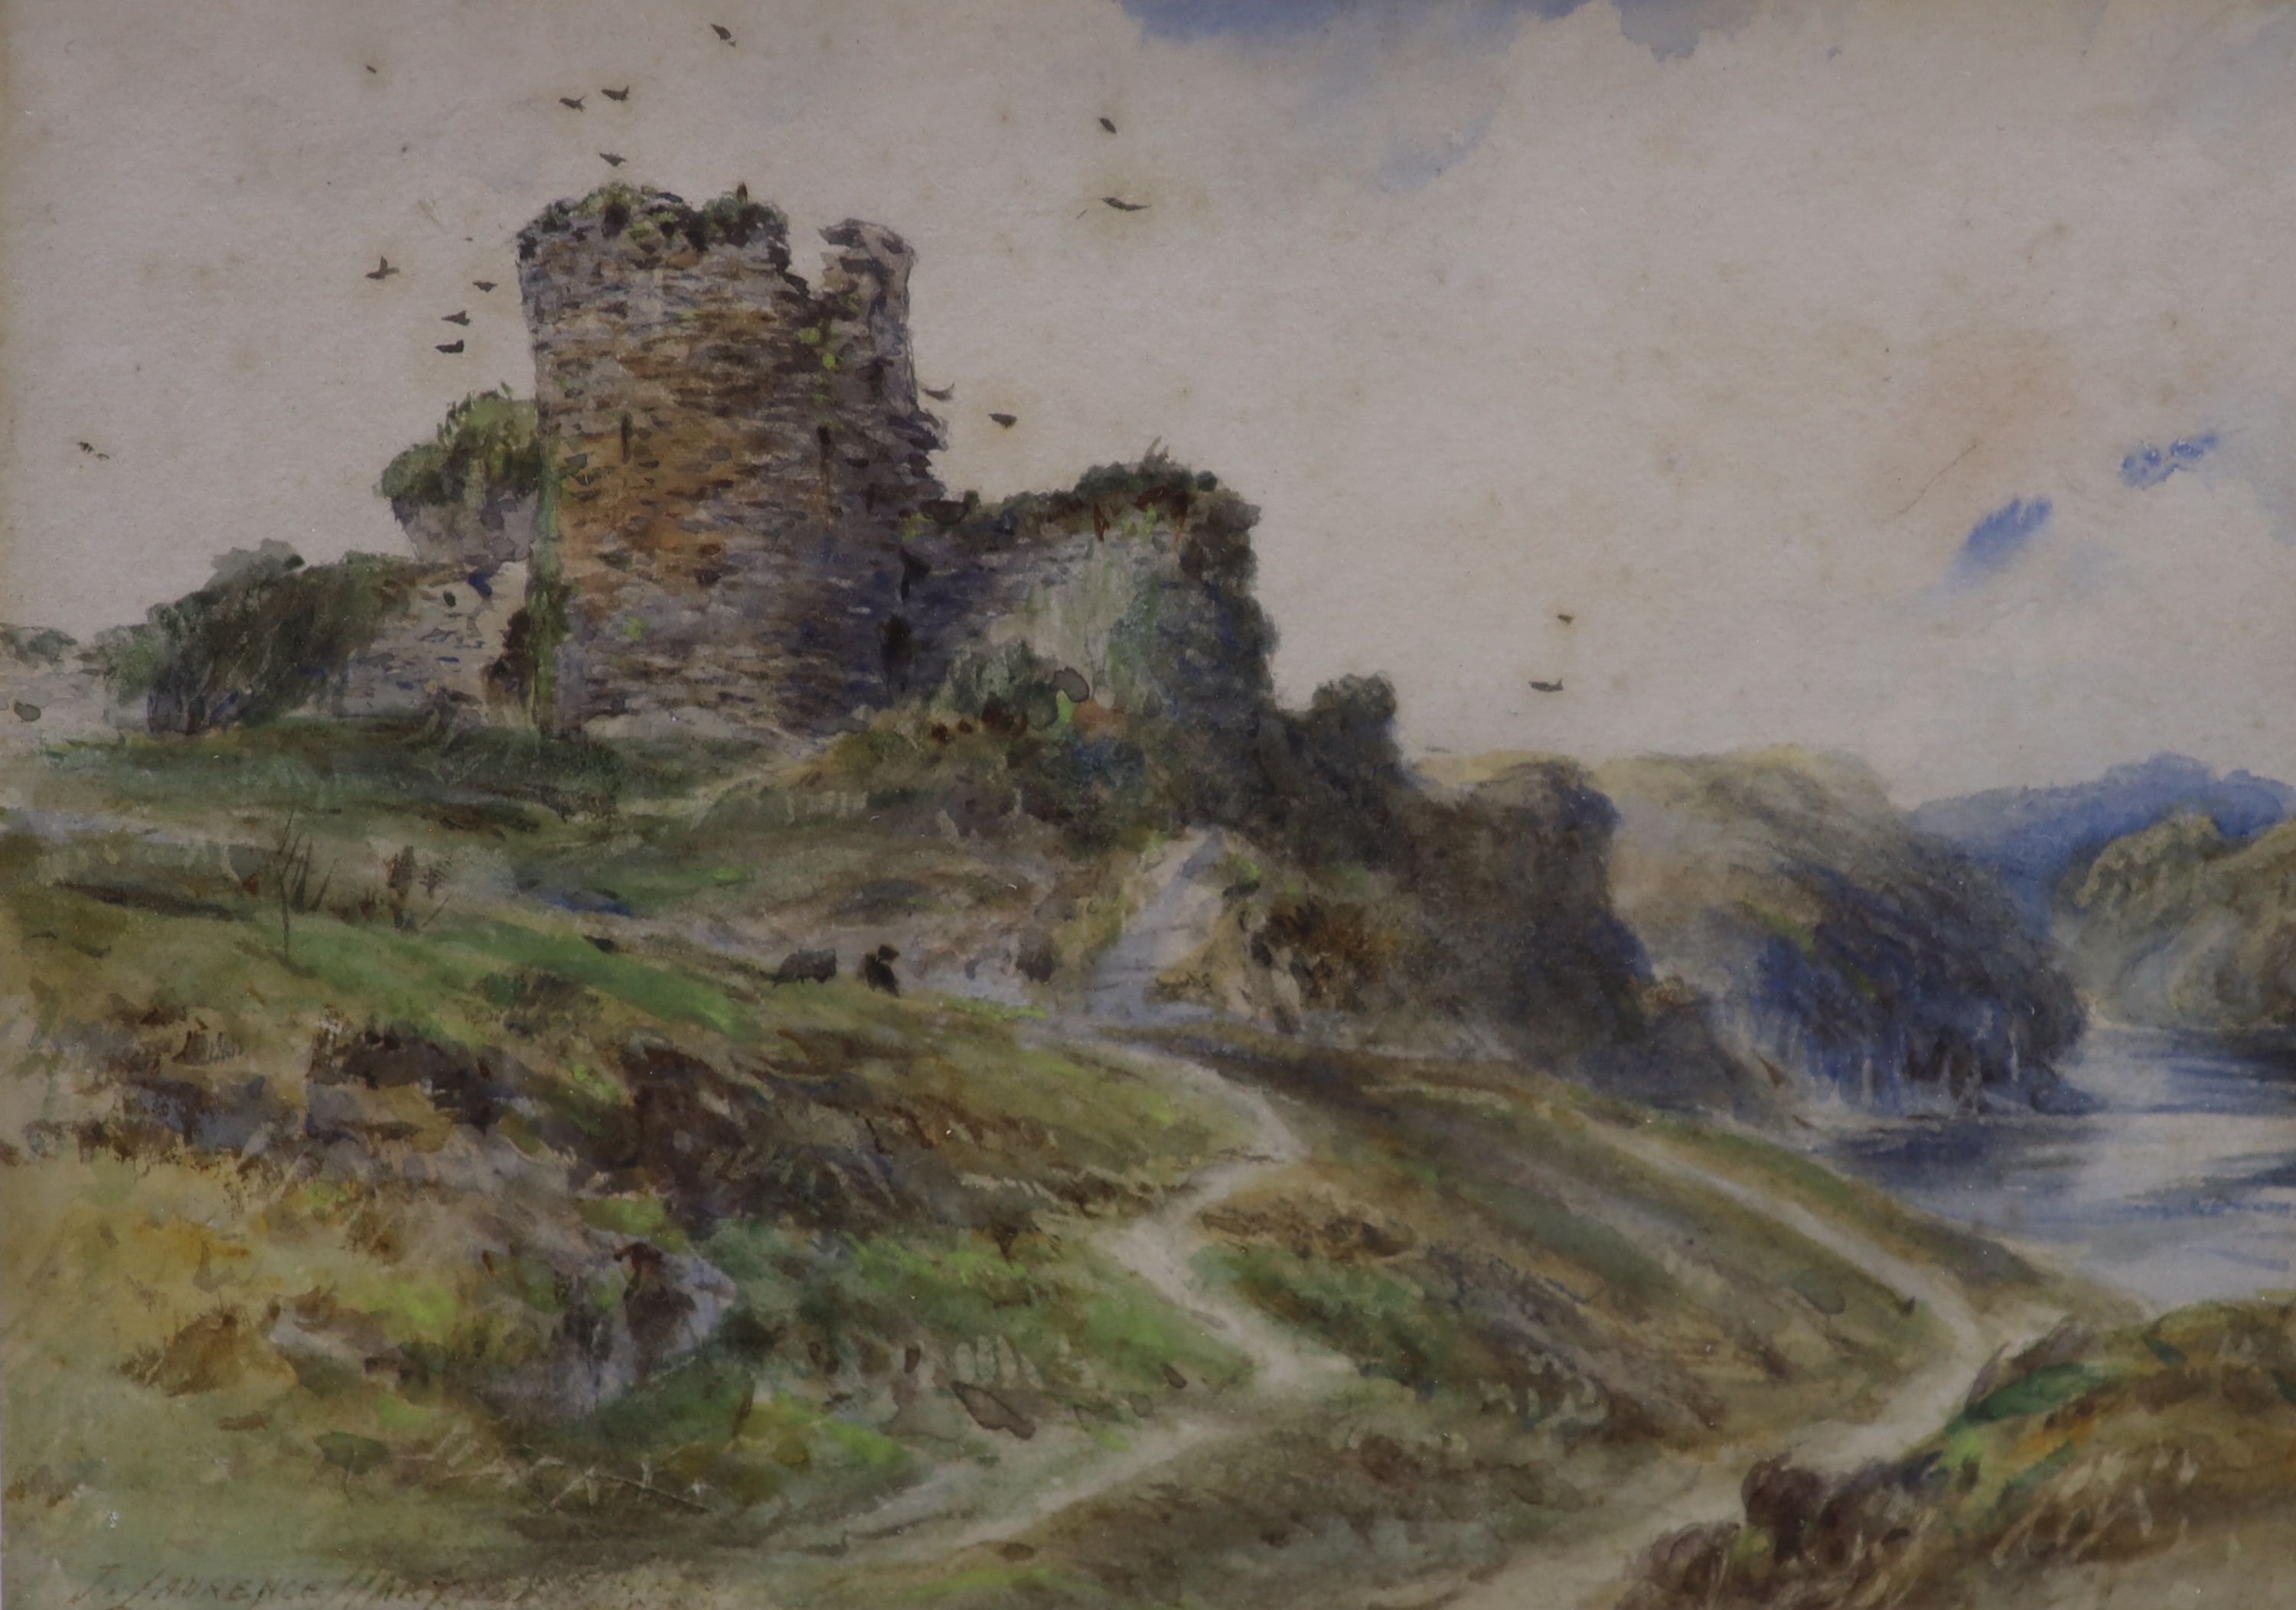 J. Laurence Hart (Exh.1882-1906), watercolour, Birds beside castle ruins, signed, 15 x 20cm